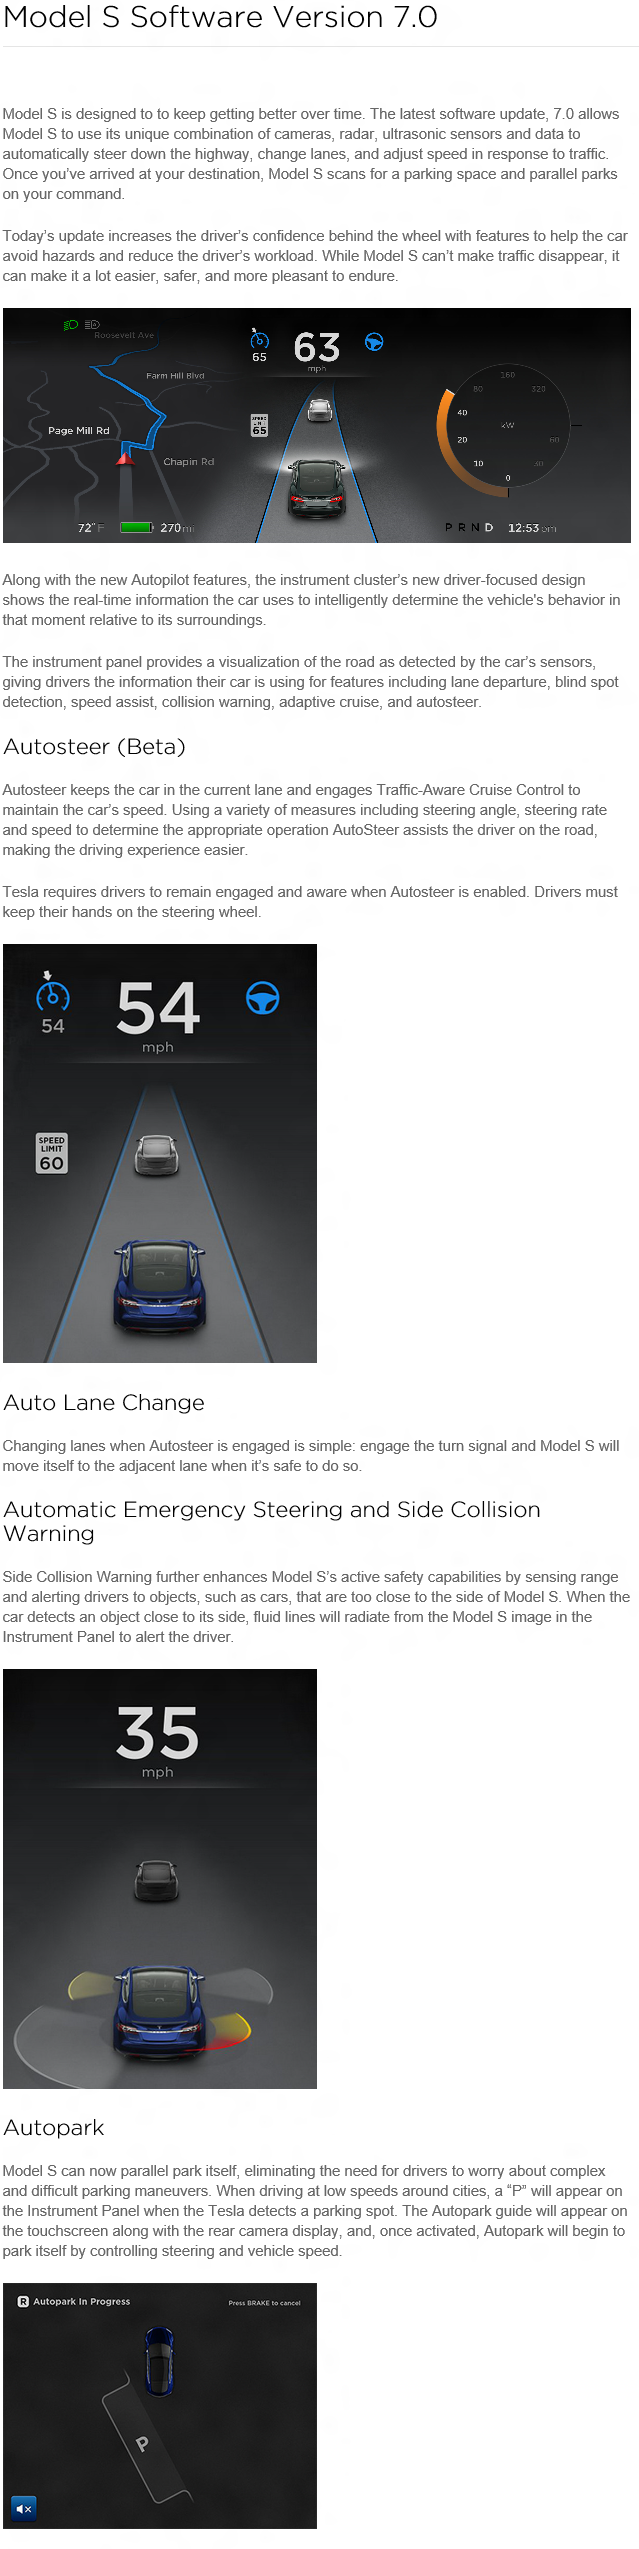 Tesla Model S Version 7.0 Release Notes